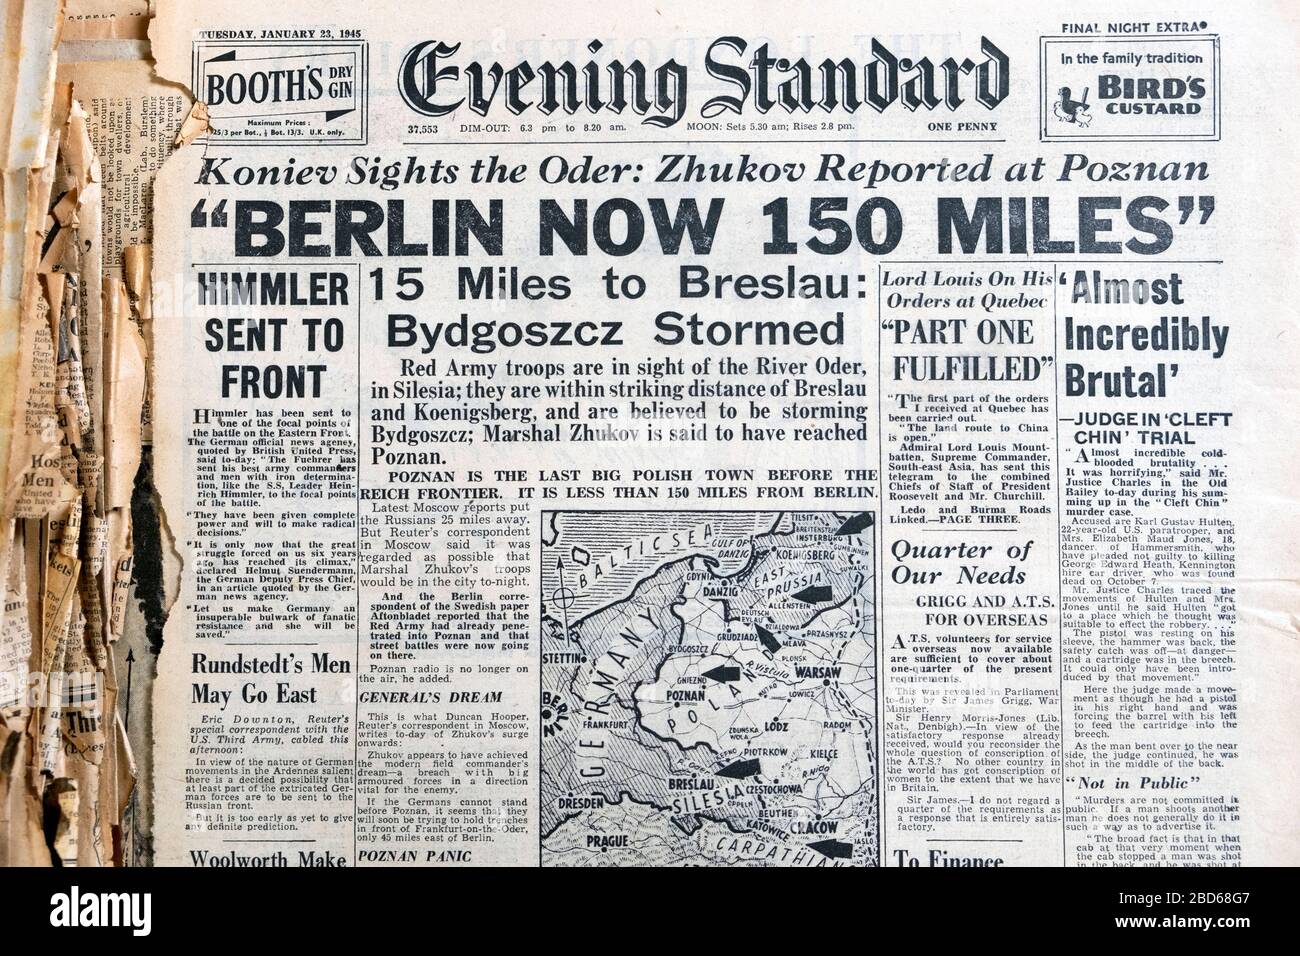 Berlin Now 150 miles' 23 Gennaio 1945 Evening Standard WWII titolo di  giornale britannico a Londra Inghilterra Gran Bretagna Regno Unito Foto  stock - Alamy